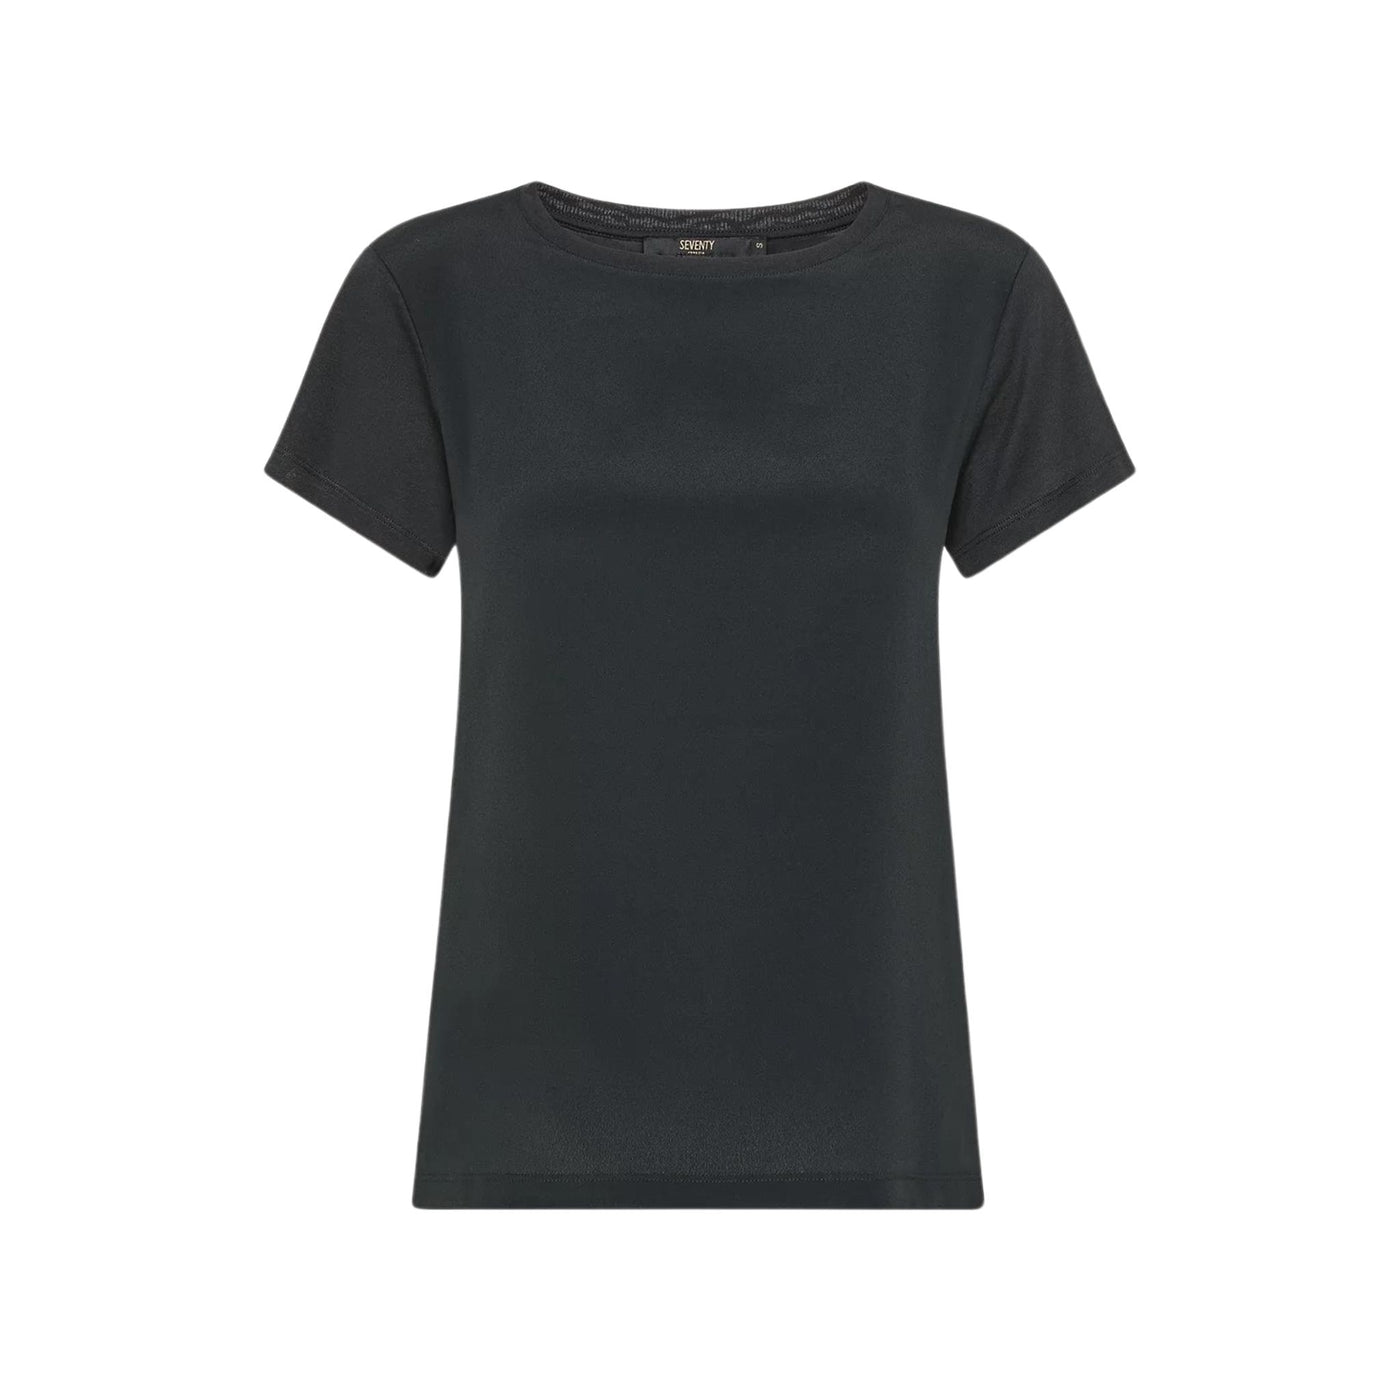 T-shirt Donna dalle linee classiche con scollatura girocollo